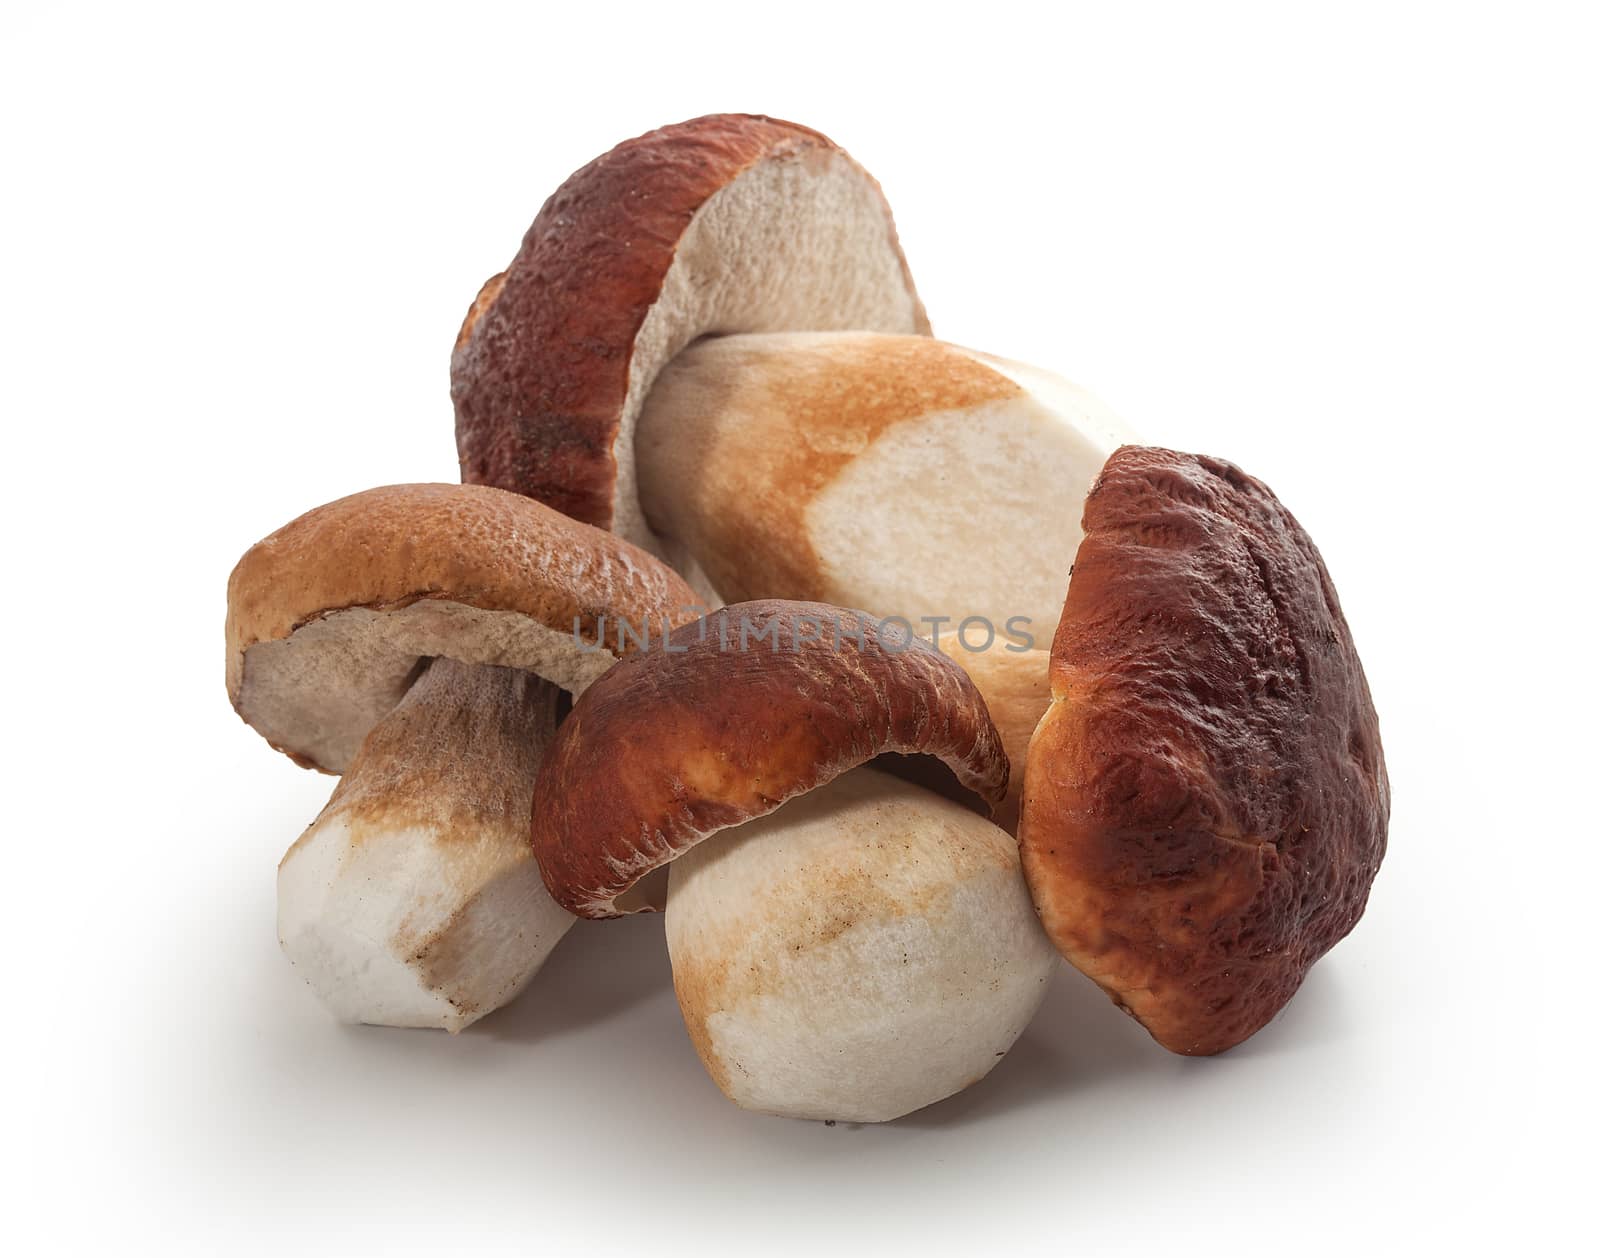 Isolated white mushrooms by Angorius